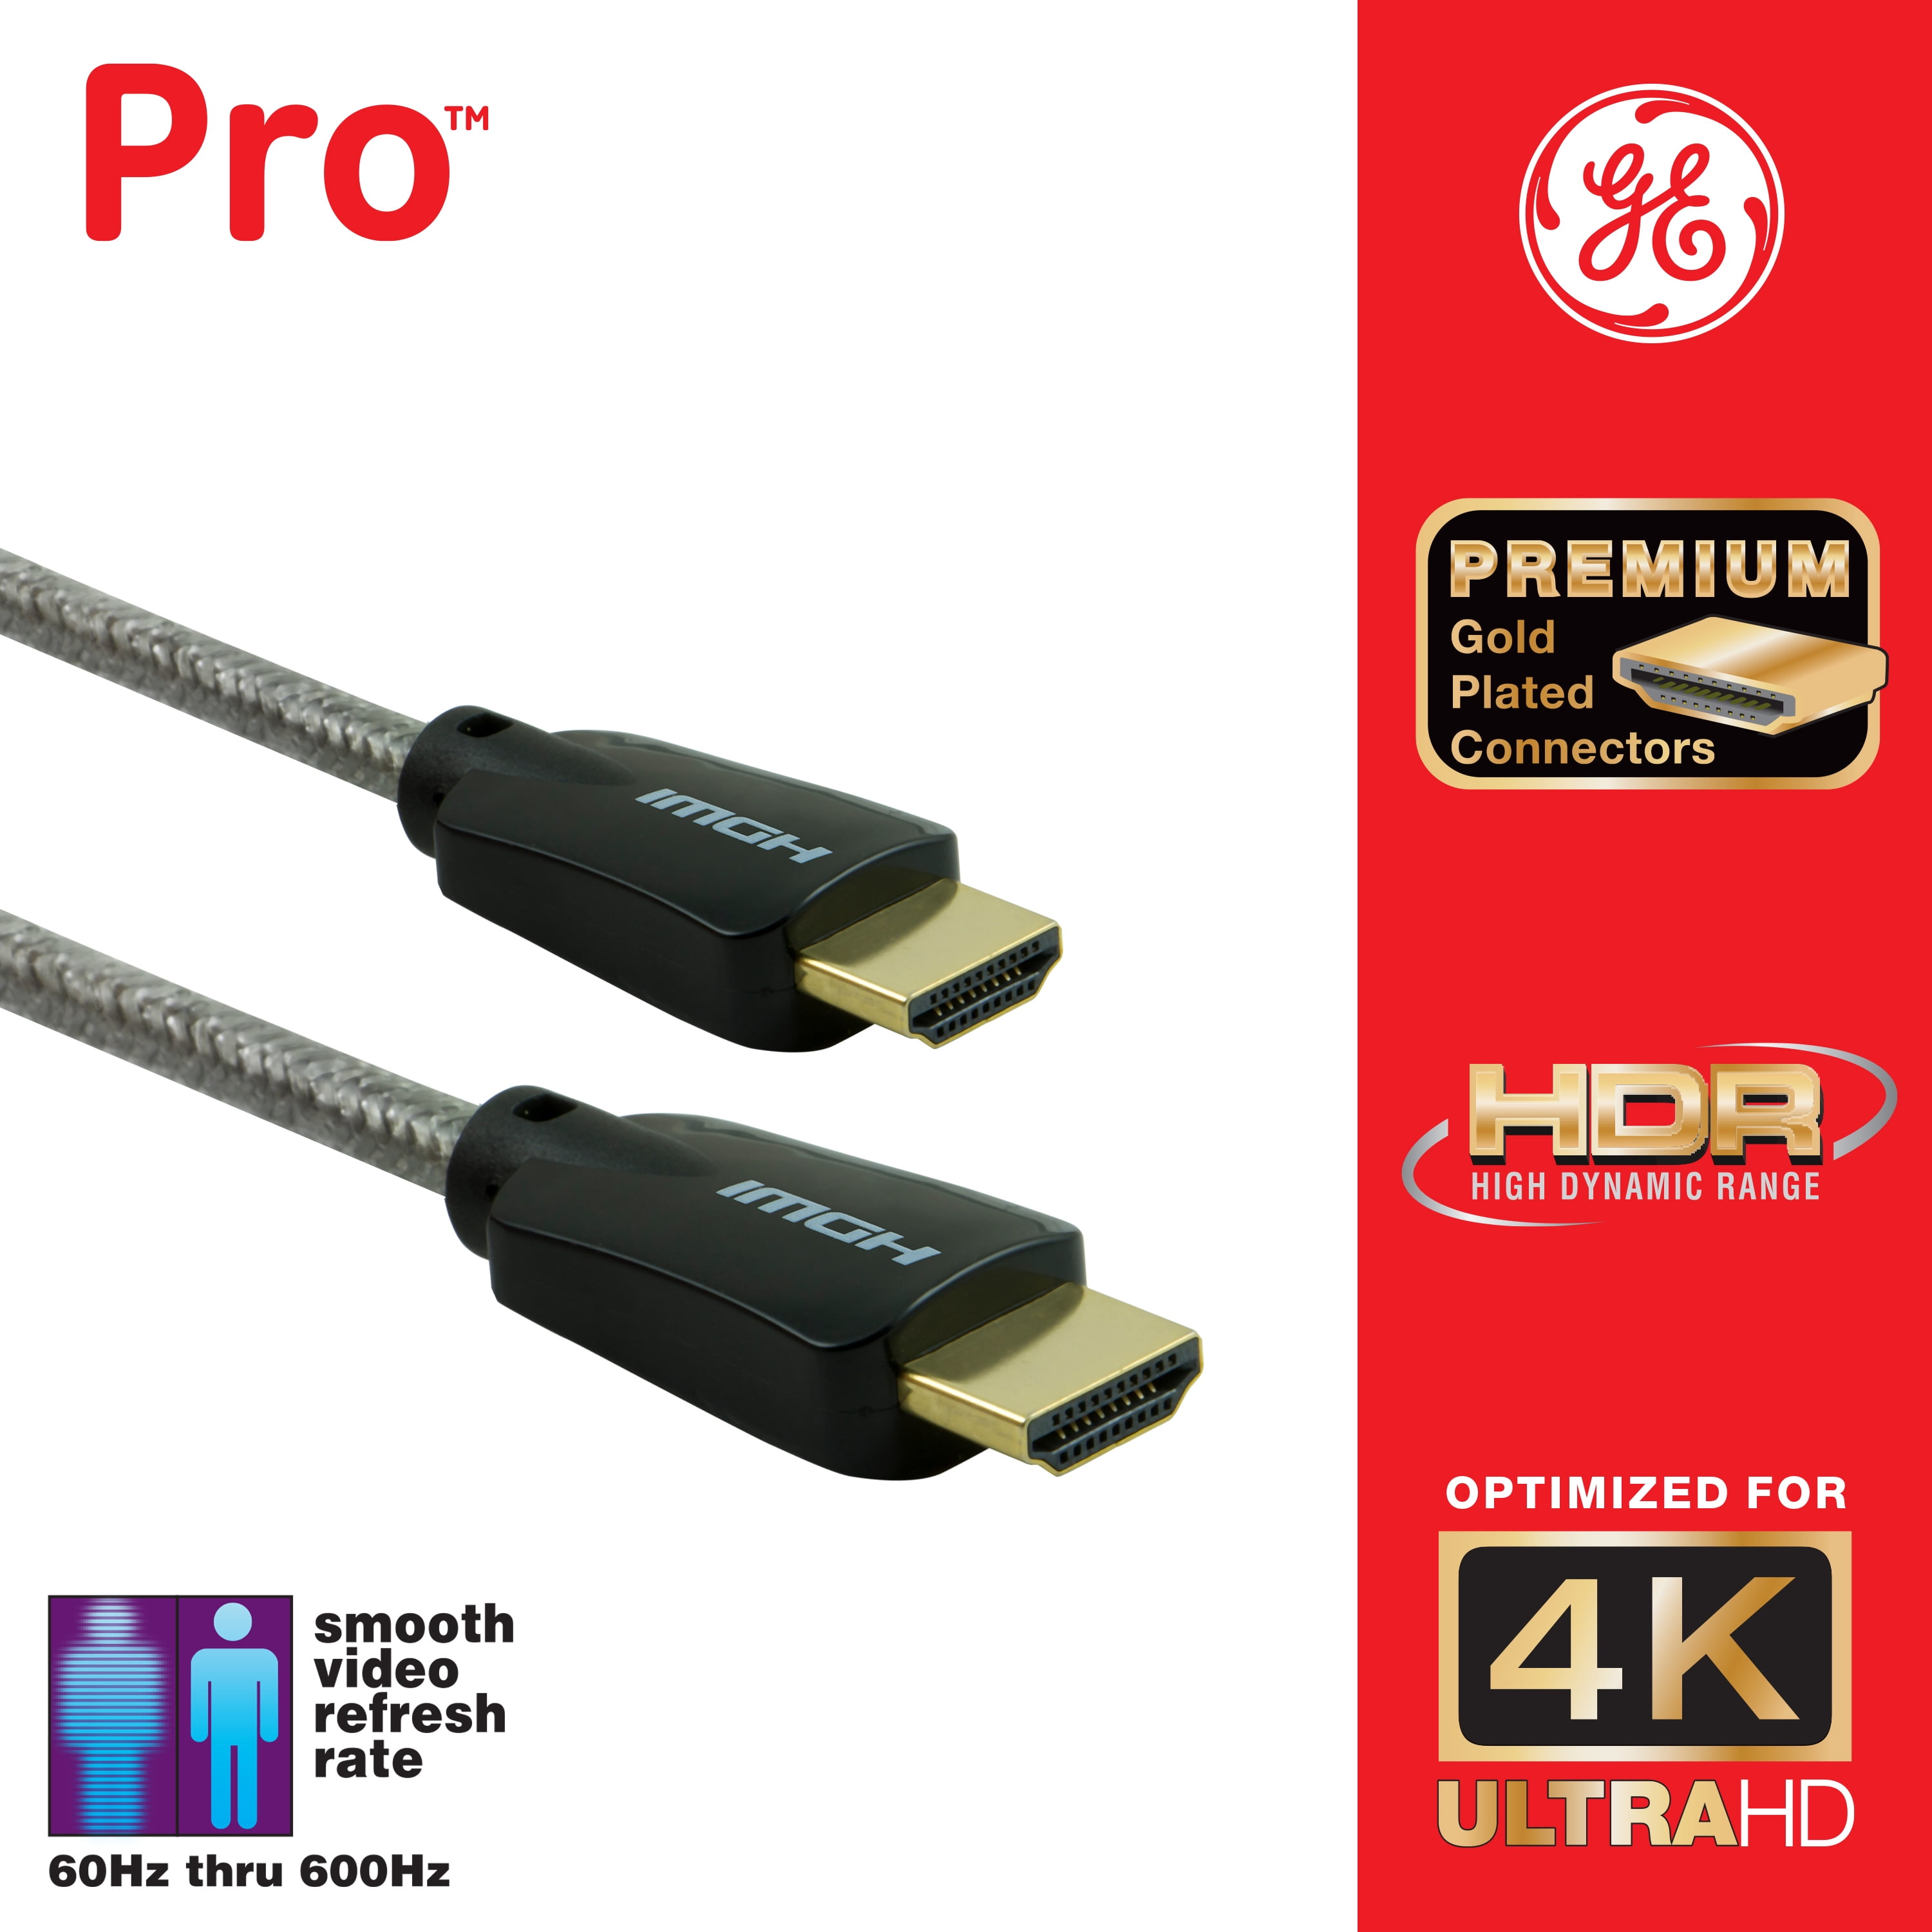 ContiMarket. CABLE HDMI 3 METROS MICROFINS